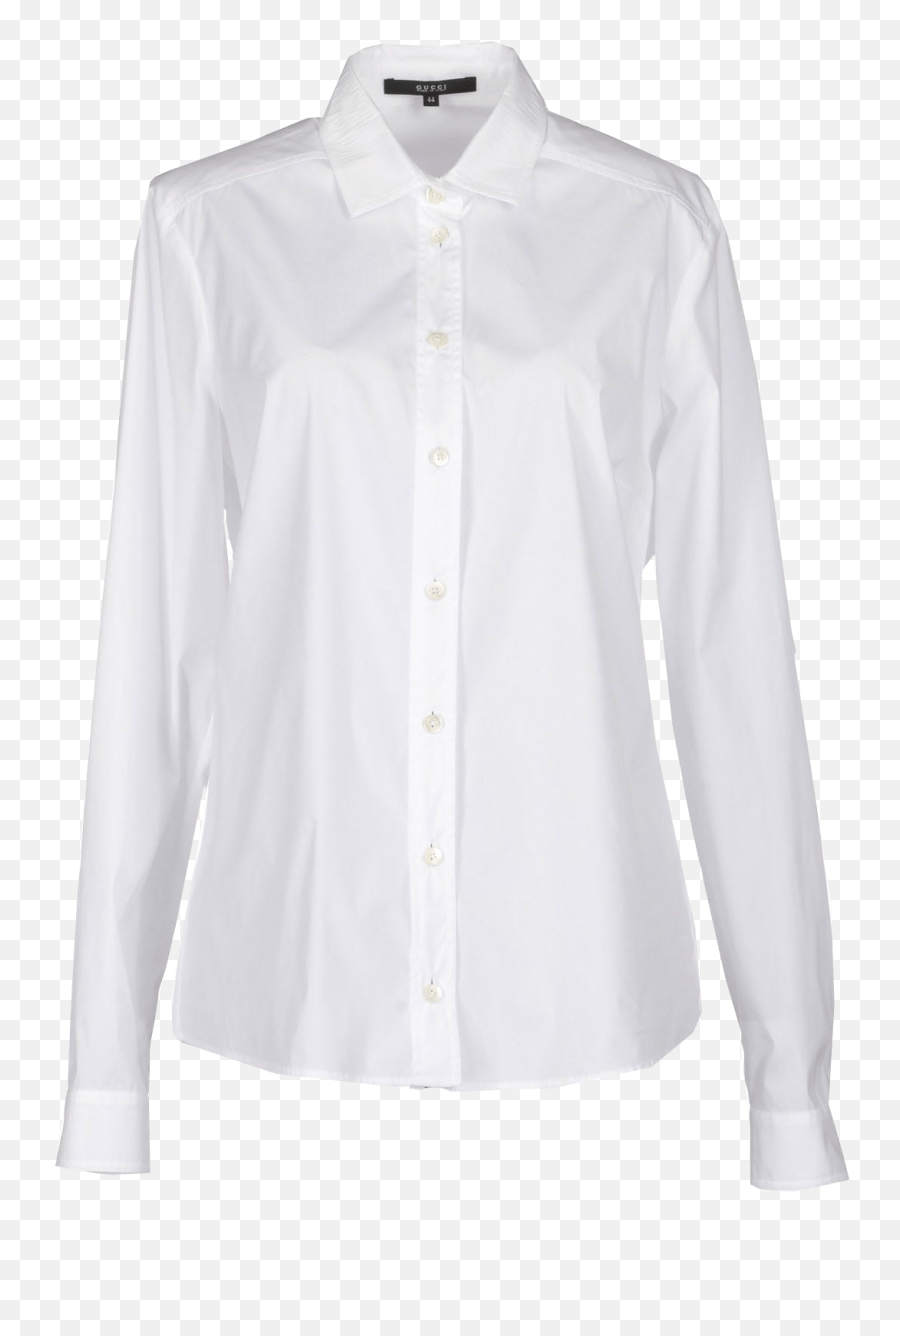 Gucci White Long Sleeved Single Button Cuffs Shirt - Avenuesixty Yohji Yamamoto Chemise Homme Png,Gucci Shirt Png